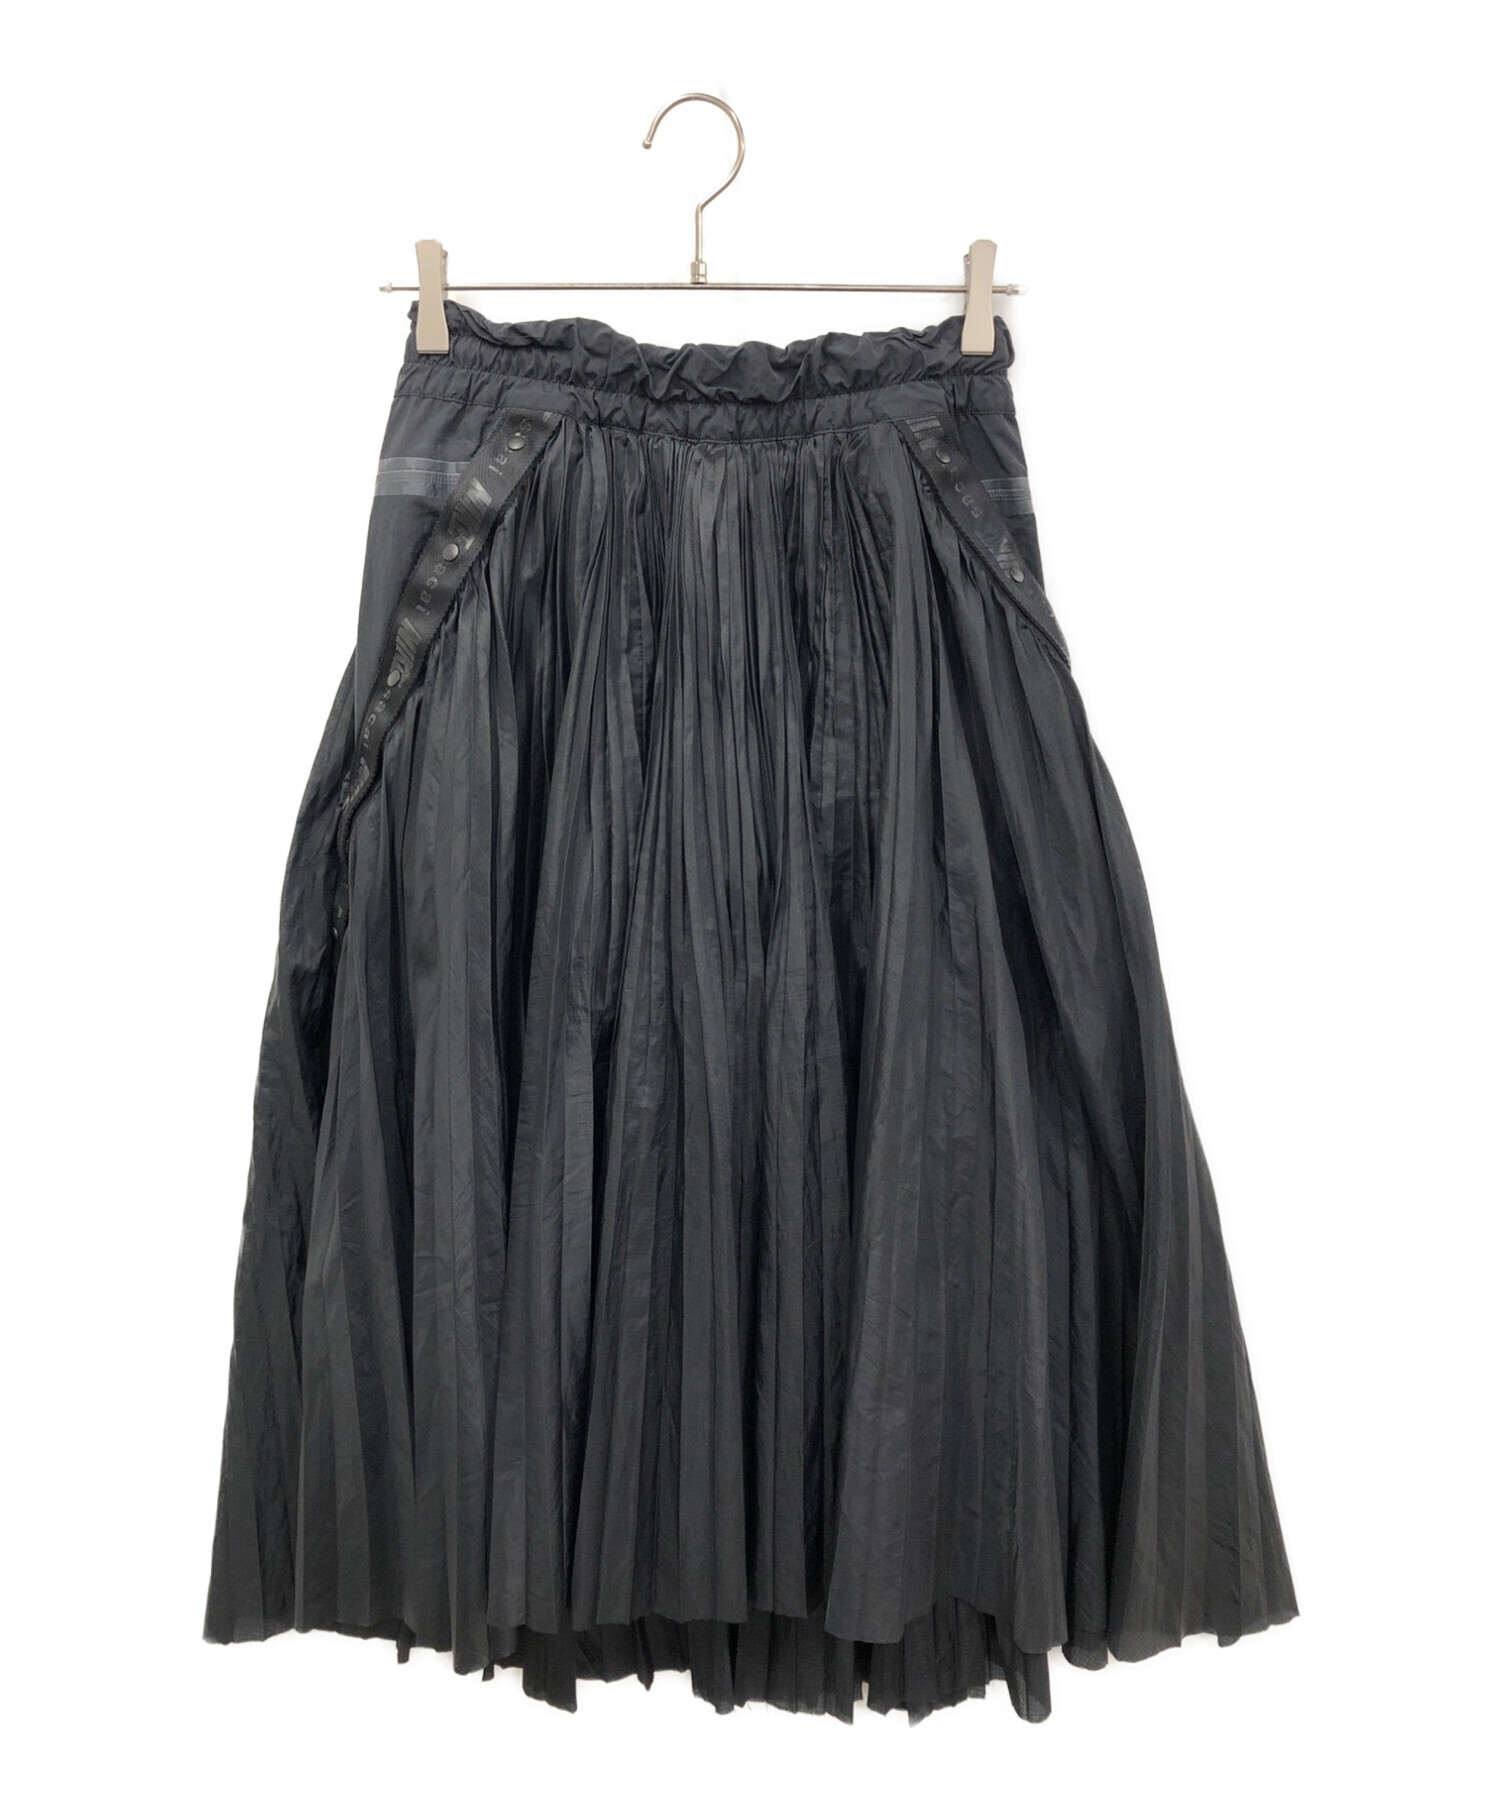 NIKE (ナイキ) sacai (サカイ) プリーツスカート ブラック サイズ:150/76A